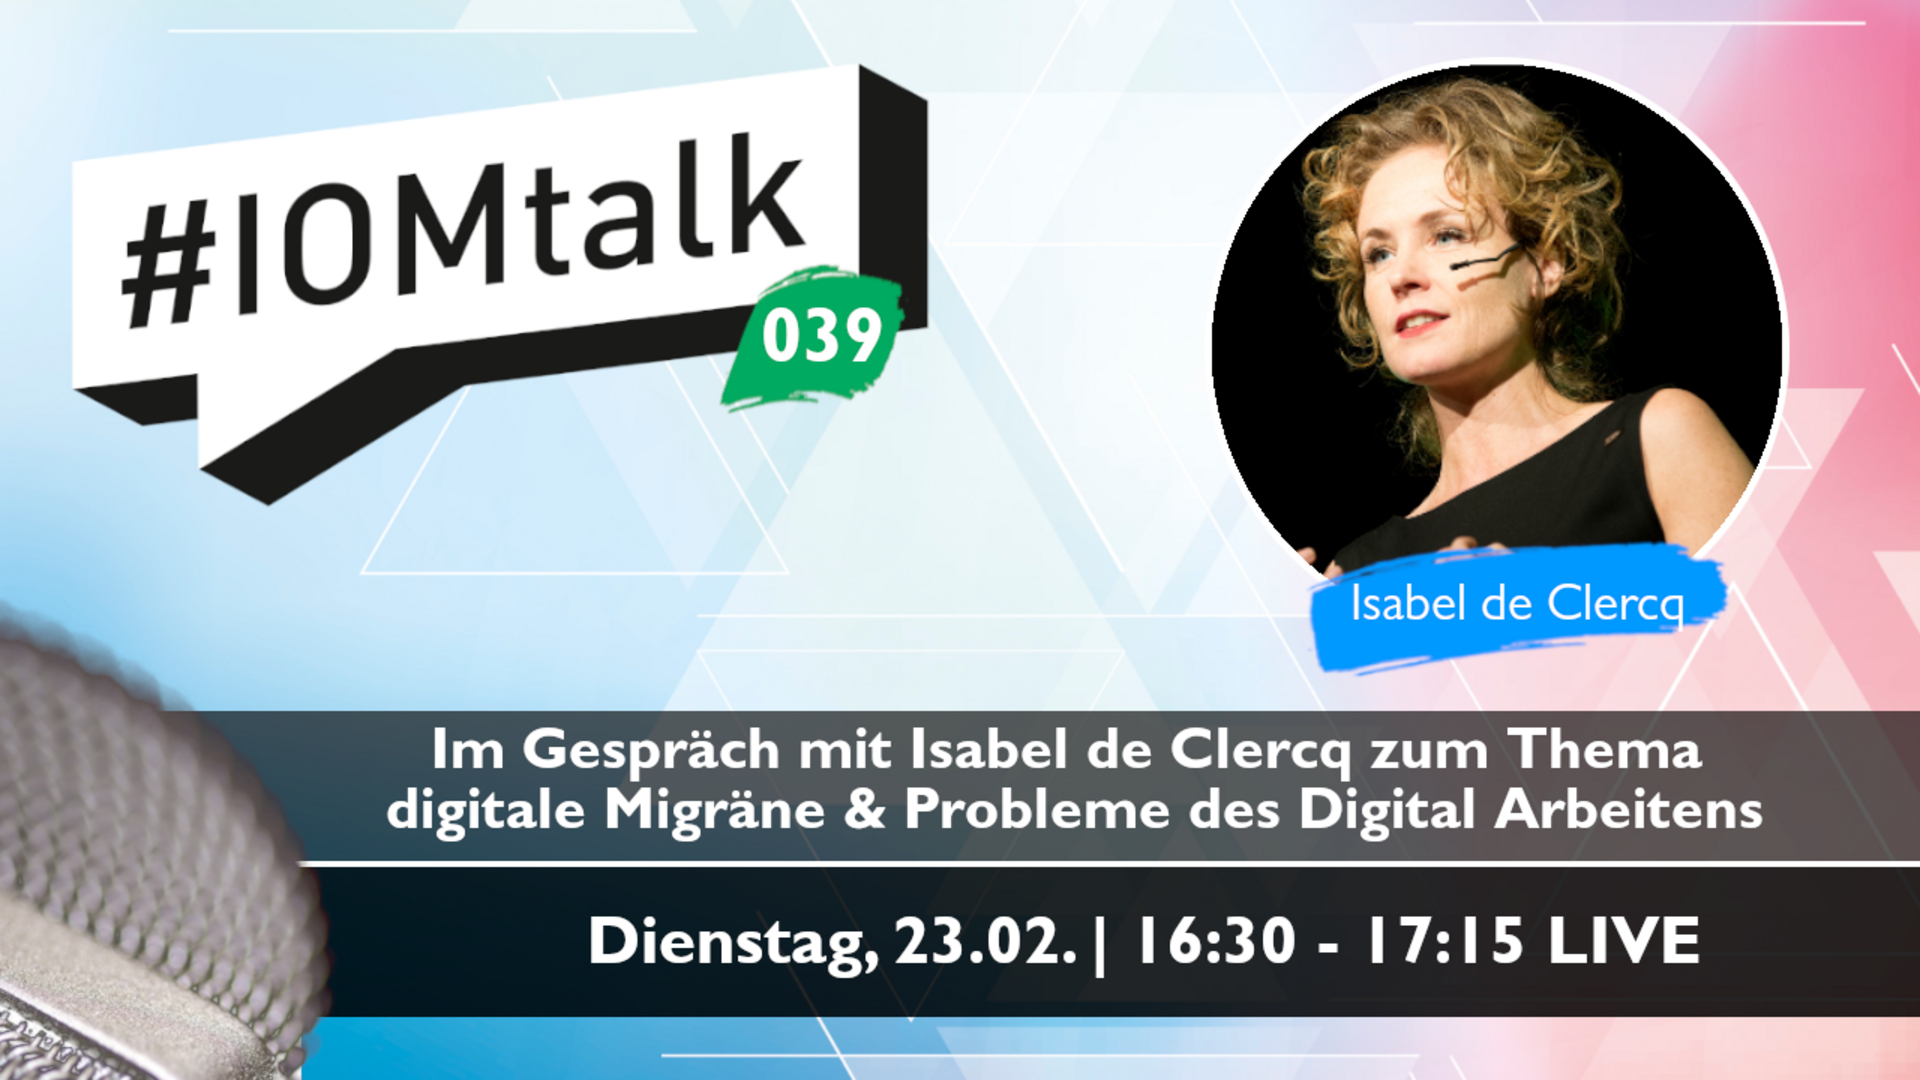 Im Gespräch mit Isabel de Clercq zum Thema Digital Migraine